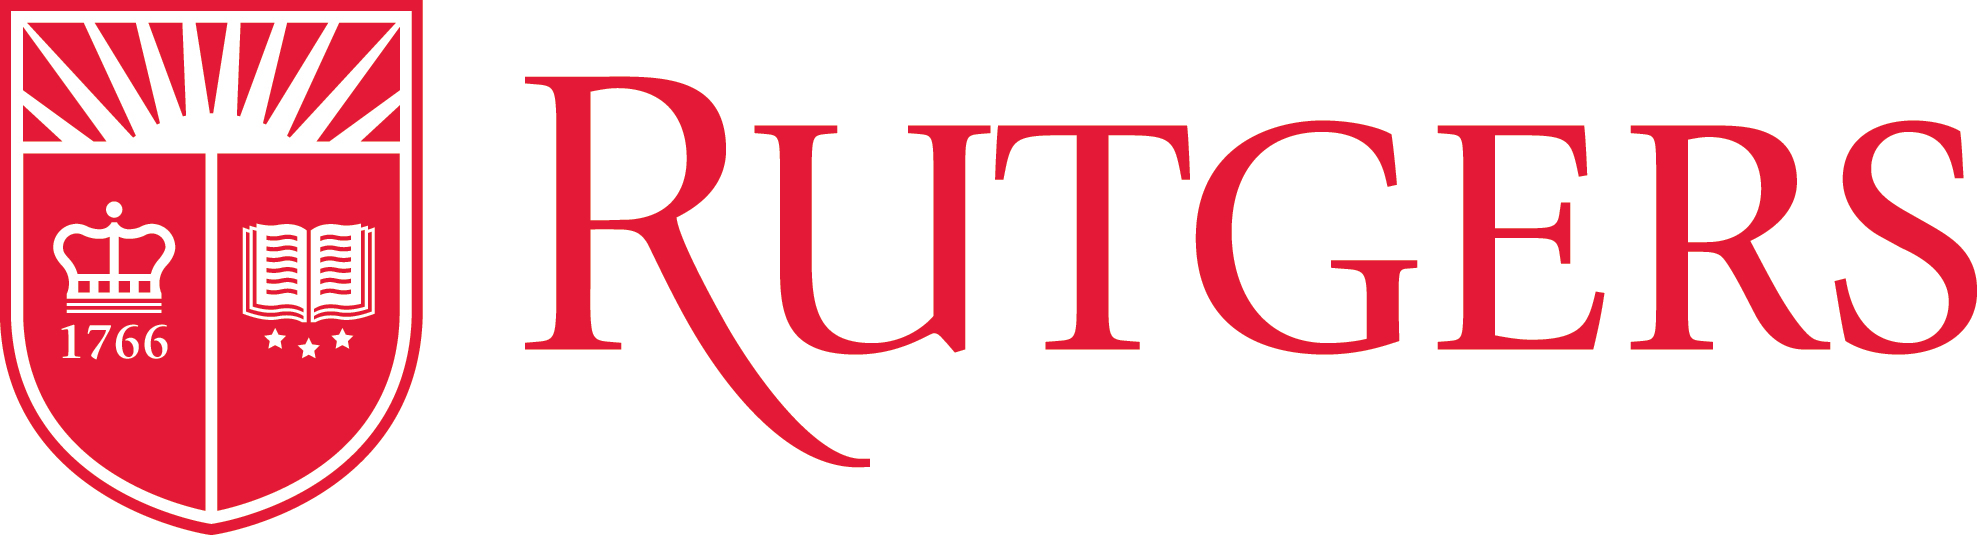 rutgers logo.png